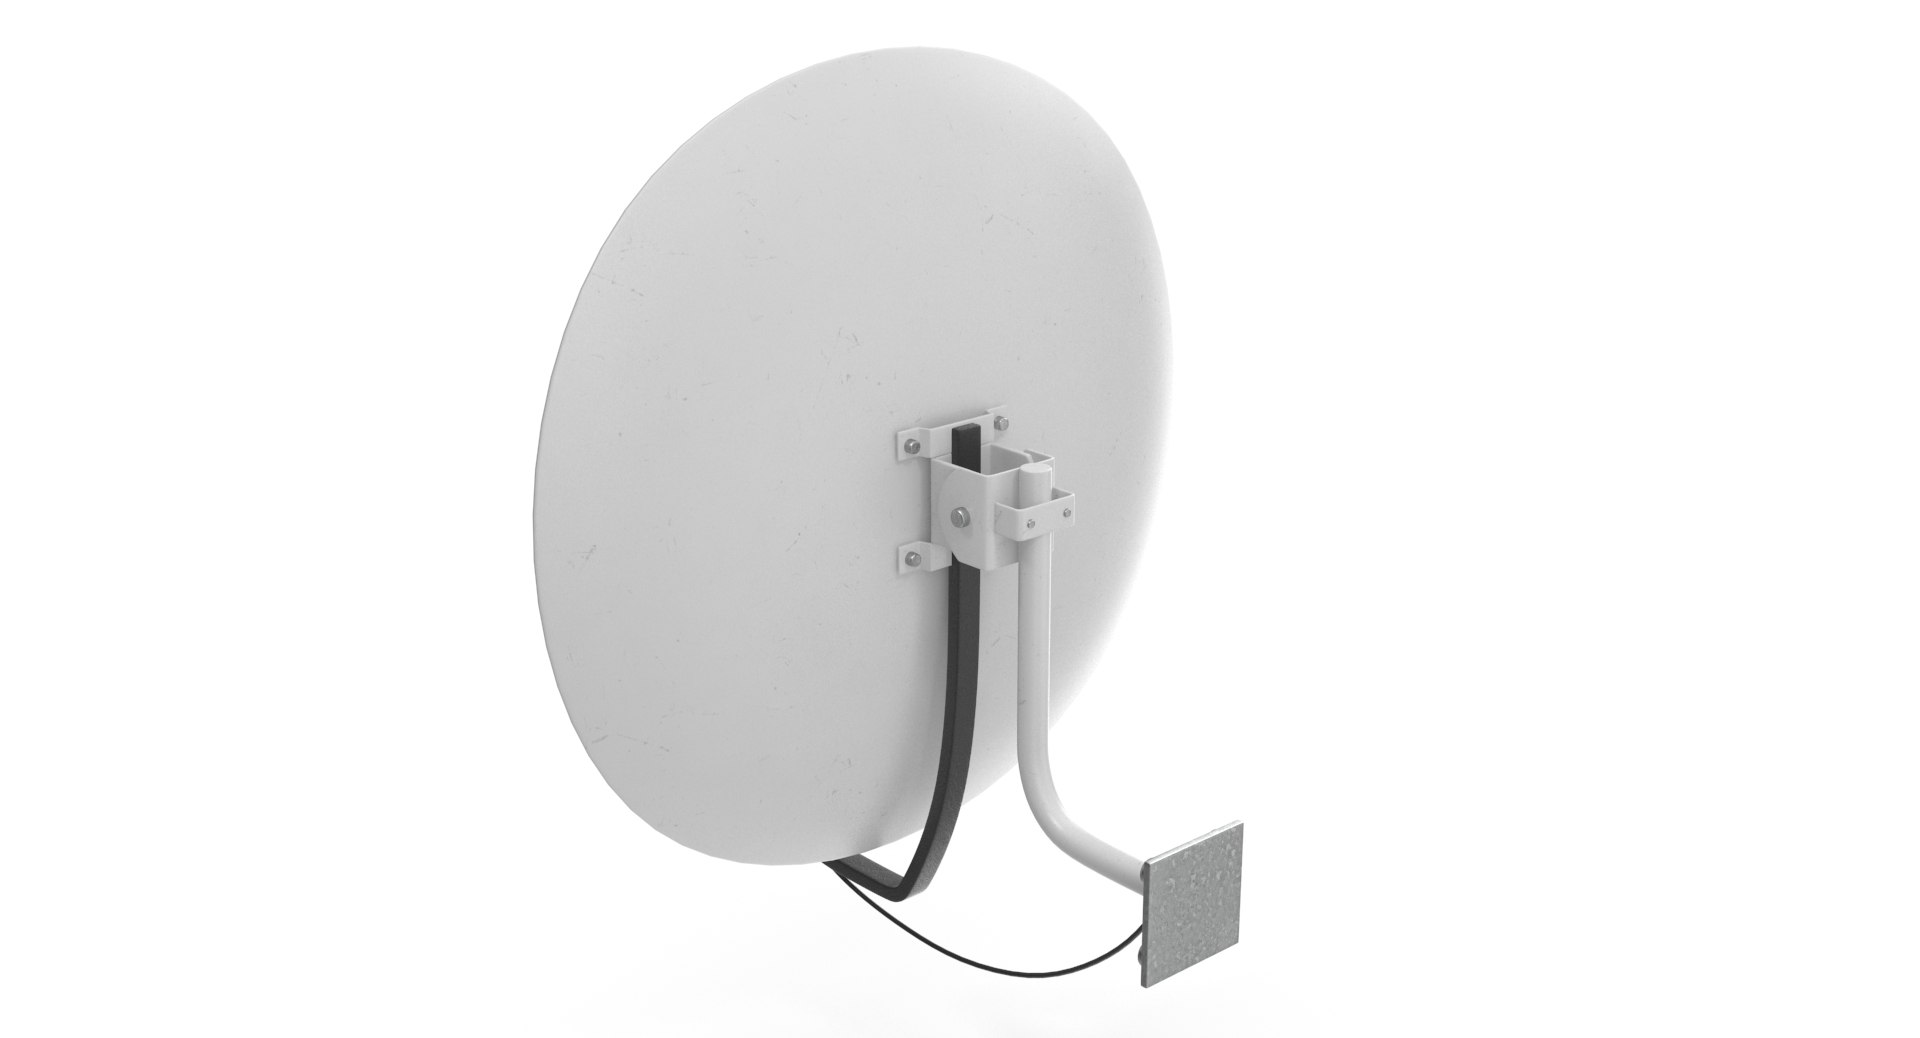 3D satellite dish - TurboSquid 1405141